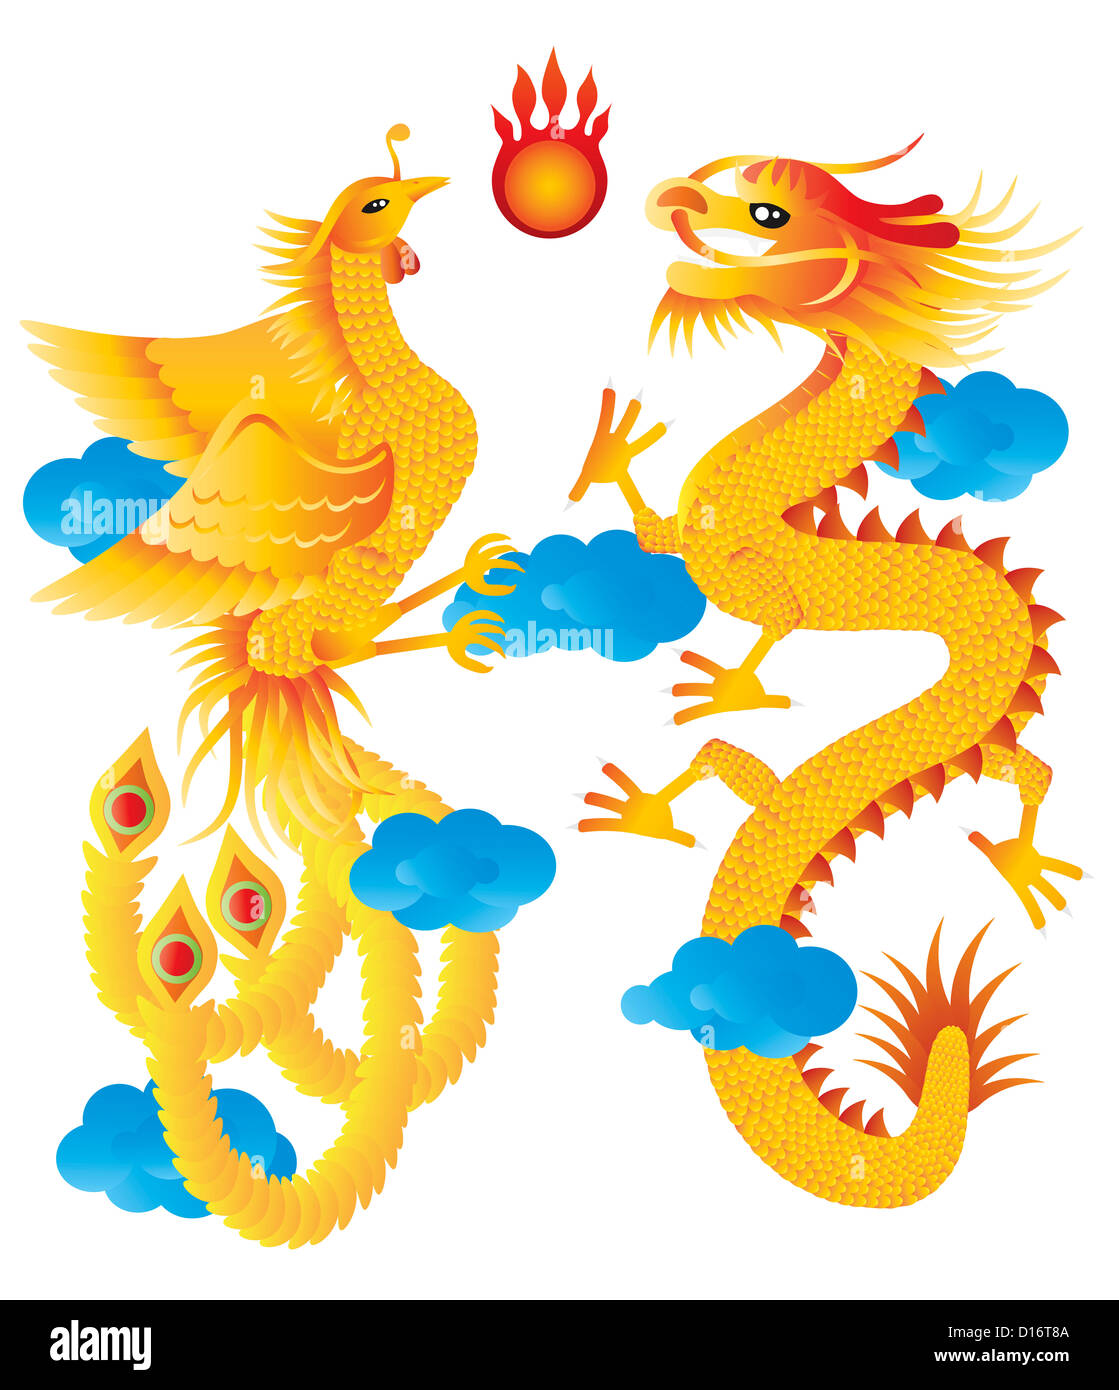 Drache und Phoenix Symbole für chinesische Hochzeit mit flammenden Ball blau Wolken Illustration, Isolated on White Background Stockfoto